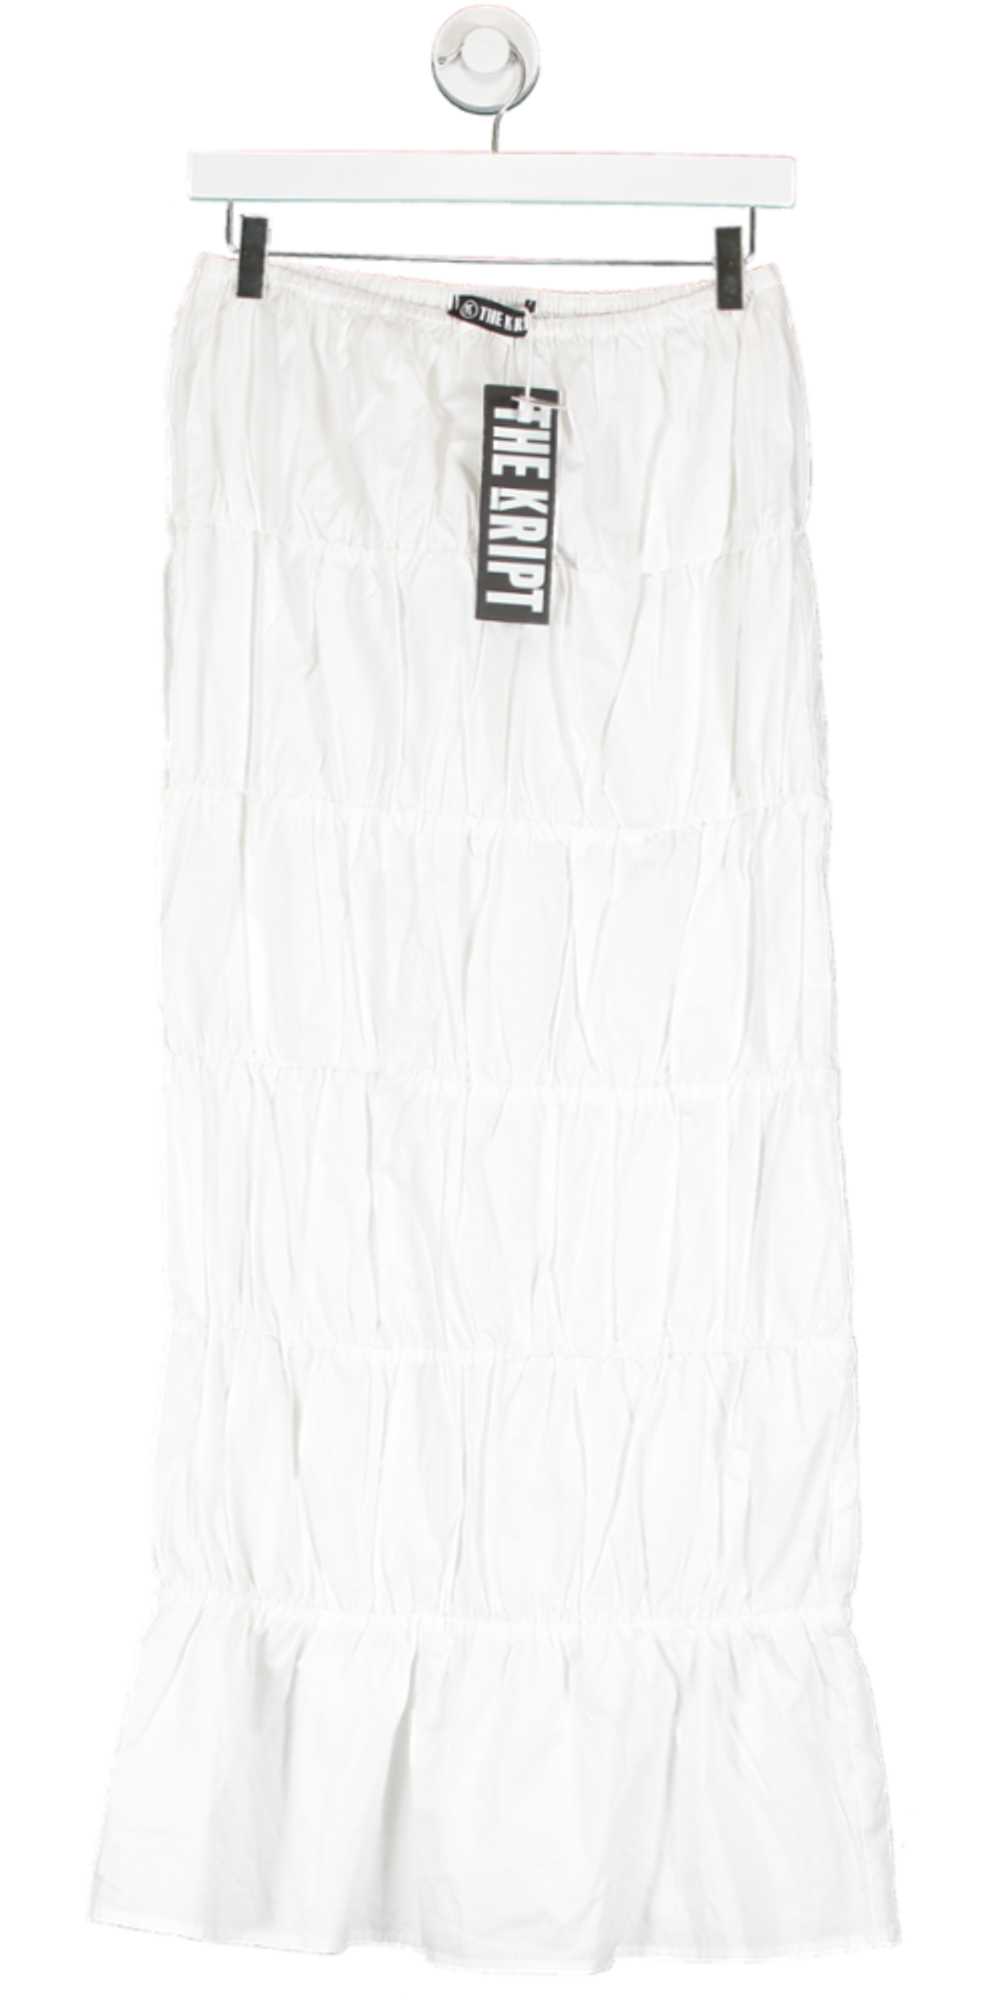 THE KRIPT White Delilah Skirt UK S - image 1